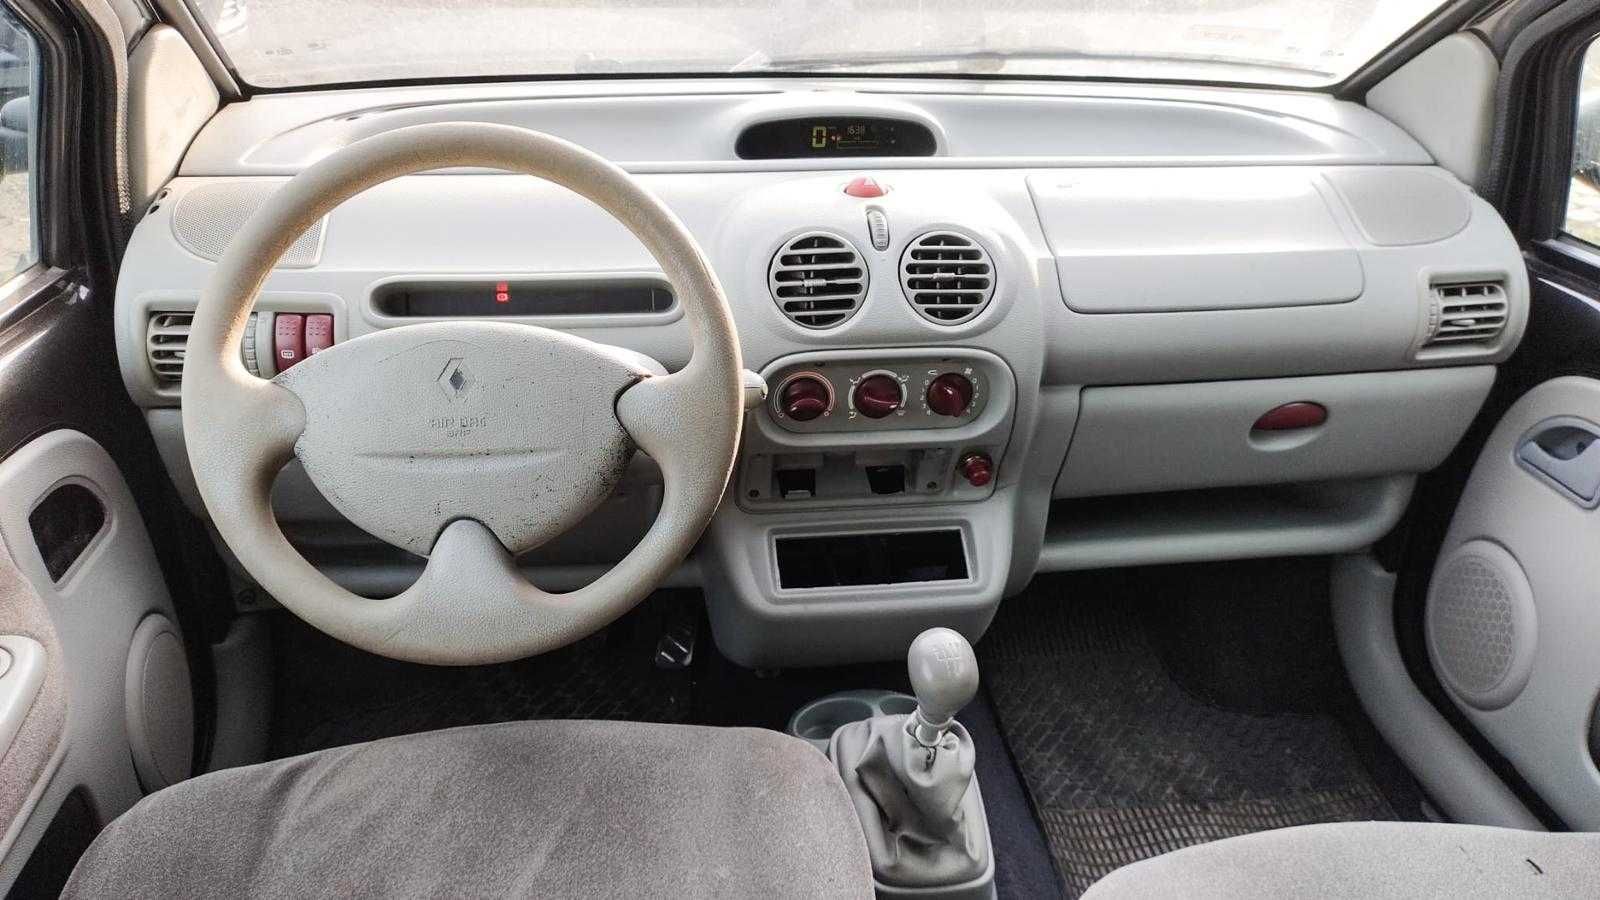 Renault Twingo/2001/1.2 Benzyna/Faltdach/Niski przebieg!